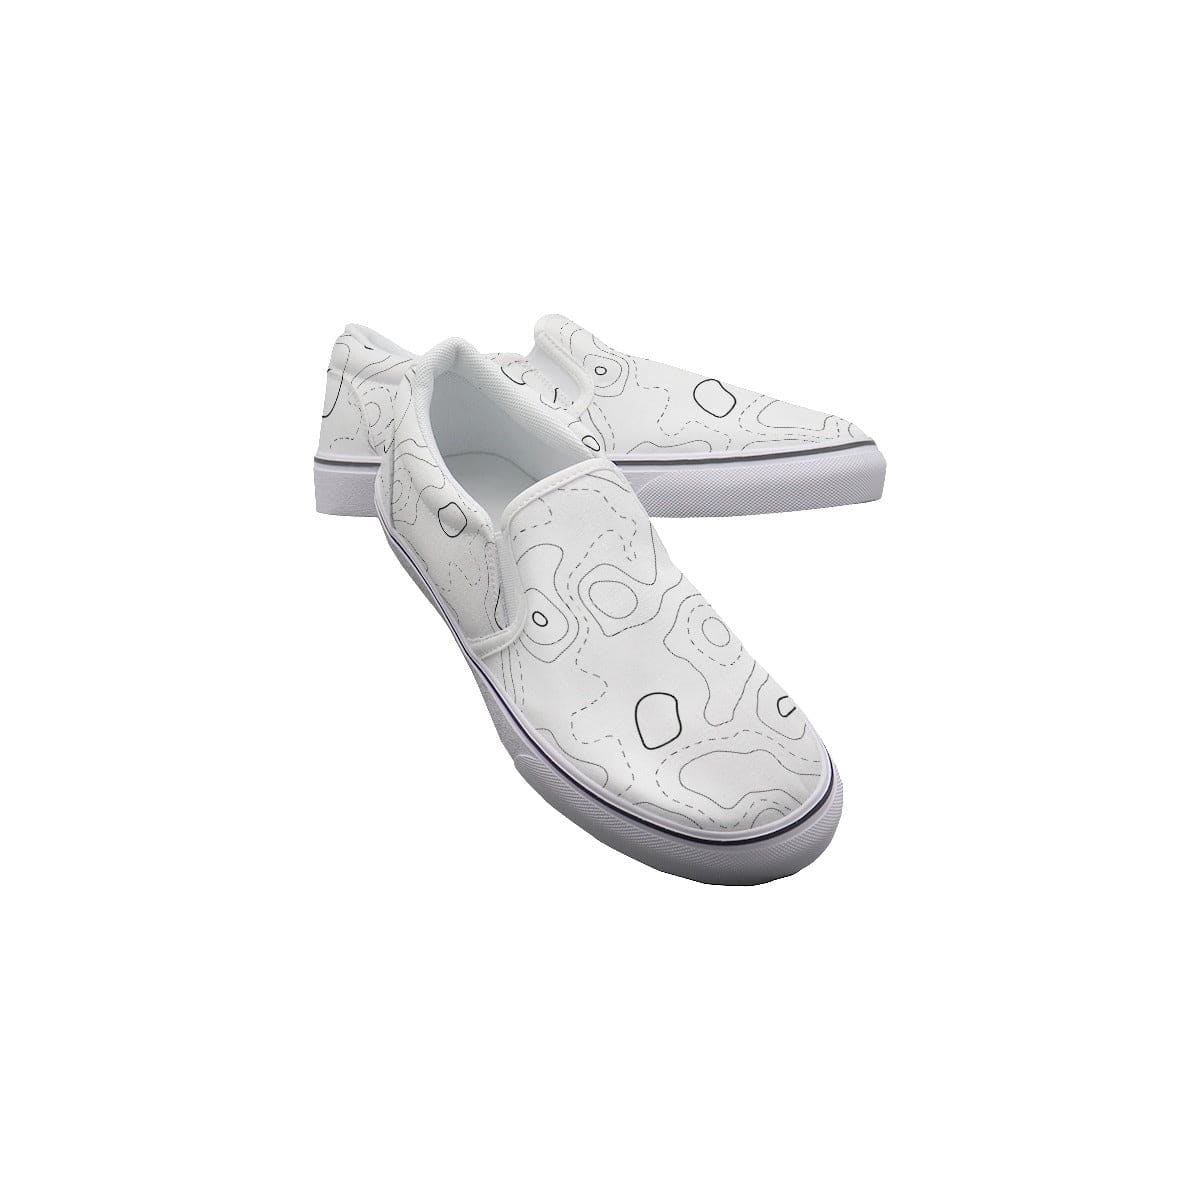 Yoycol White / US6(EUR36) Topo Treckkers - Women's Slip On Sneakers